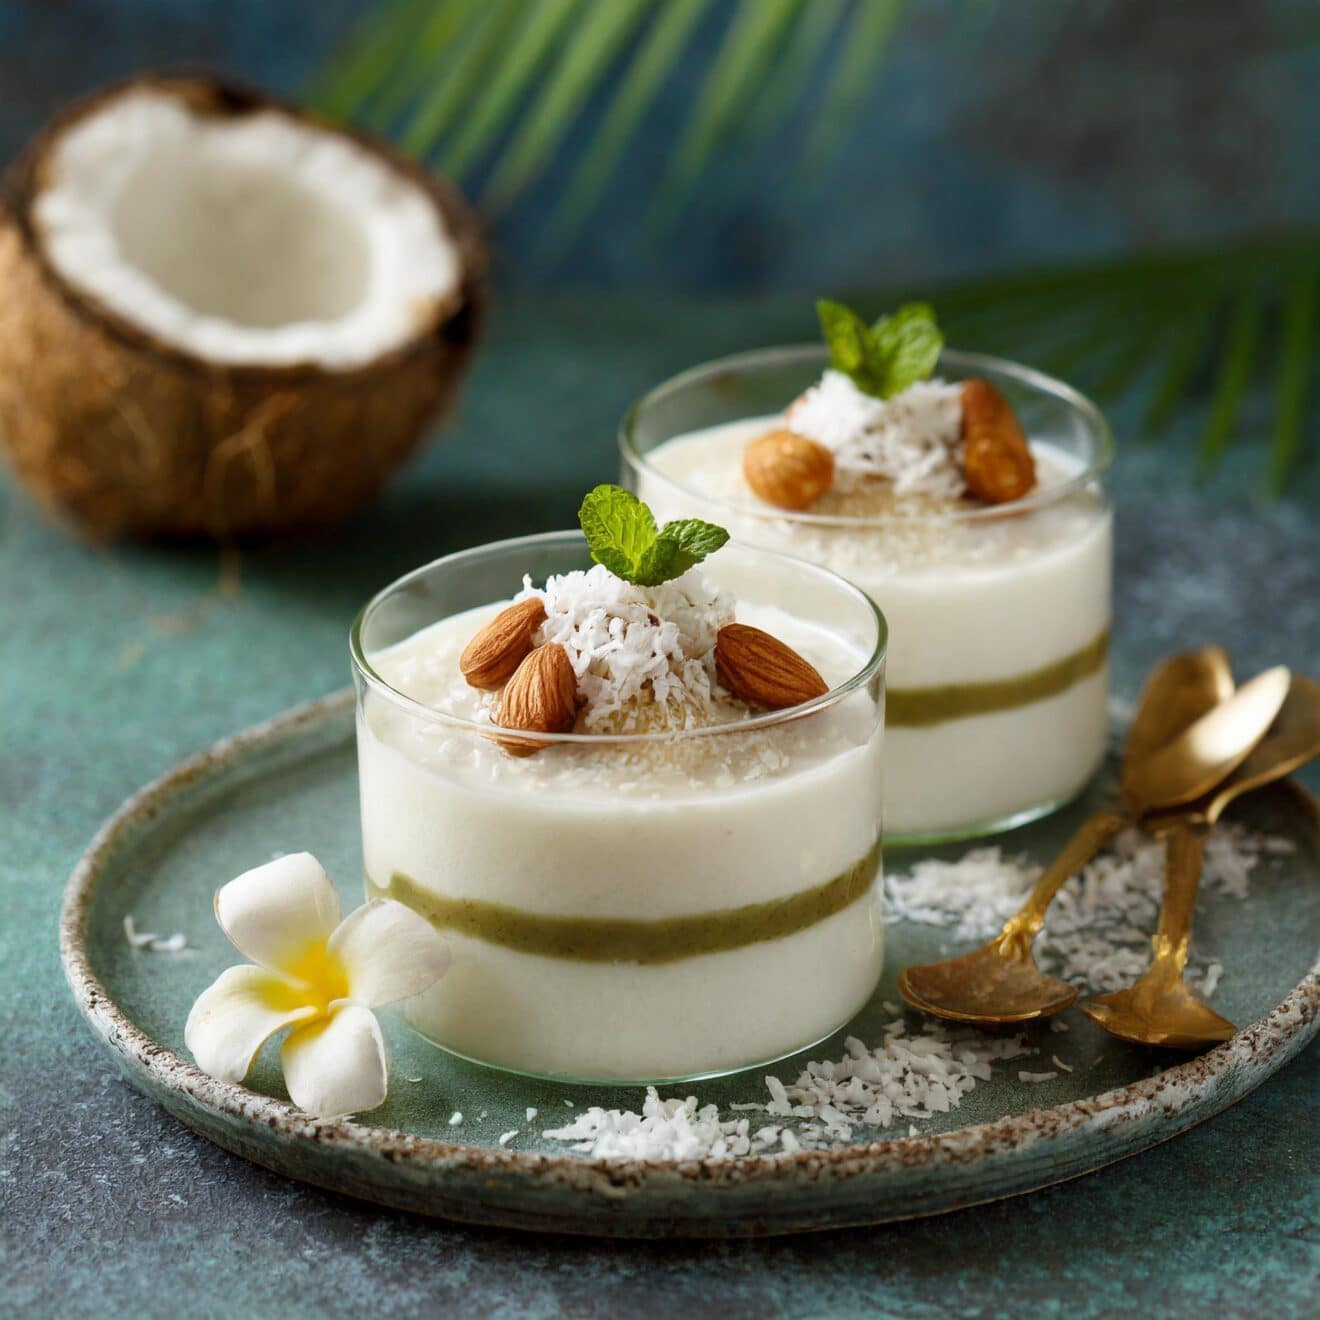 La Panna Cotta vegan à la noix de coco : Un dessert savoureux et sain